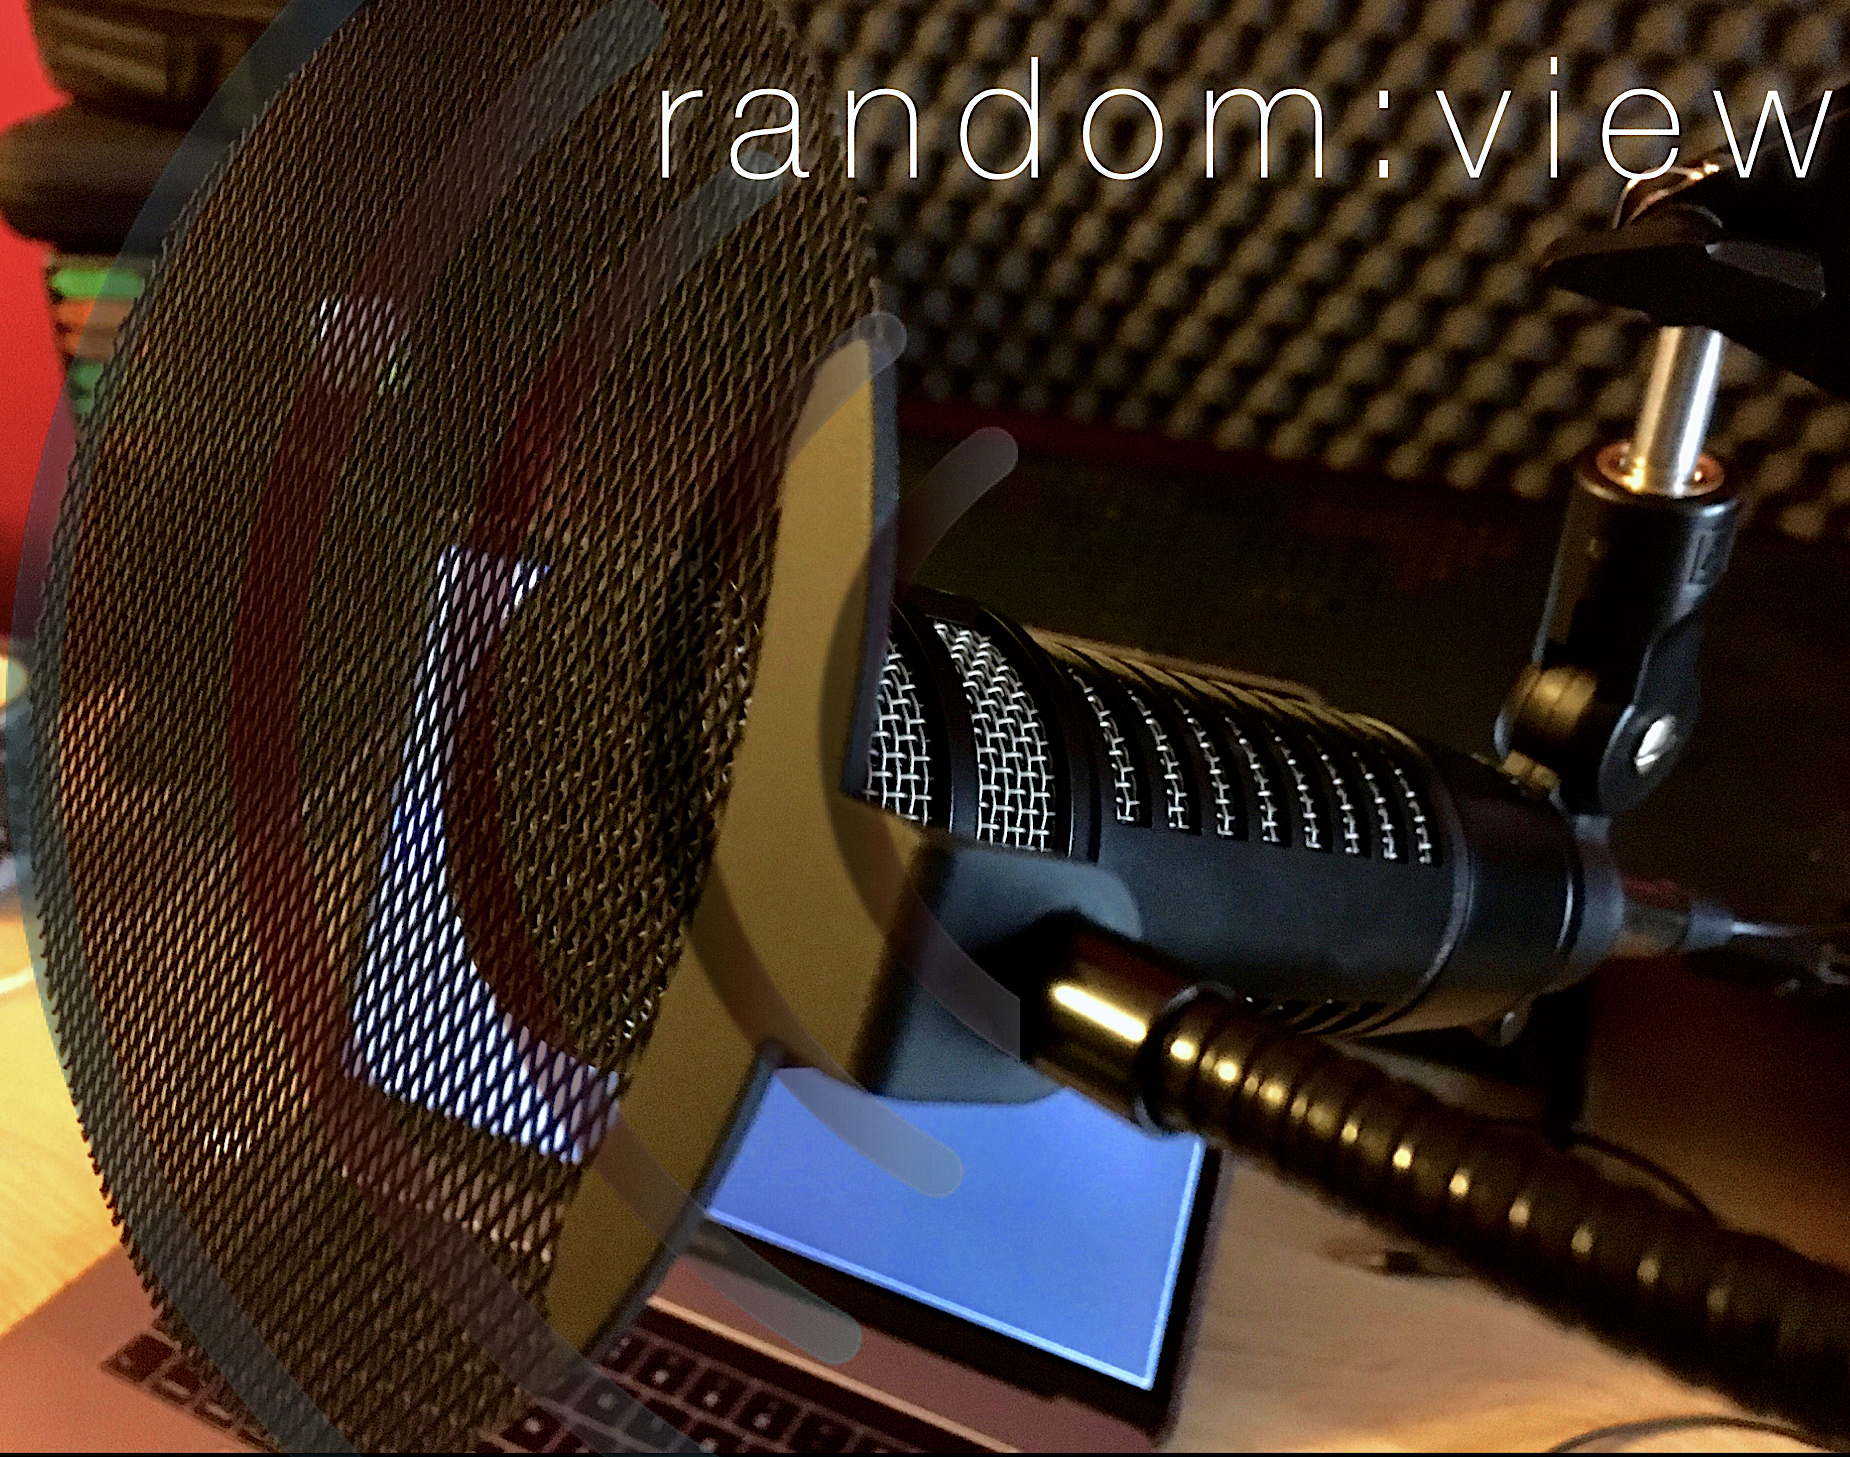 Okładka audycji random:view - mikrofon dynamiczny na tle ekranu LCD